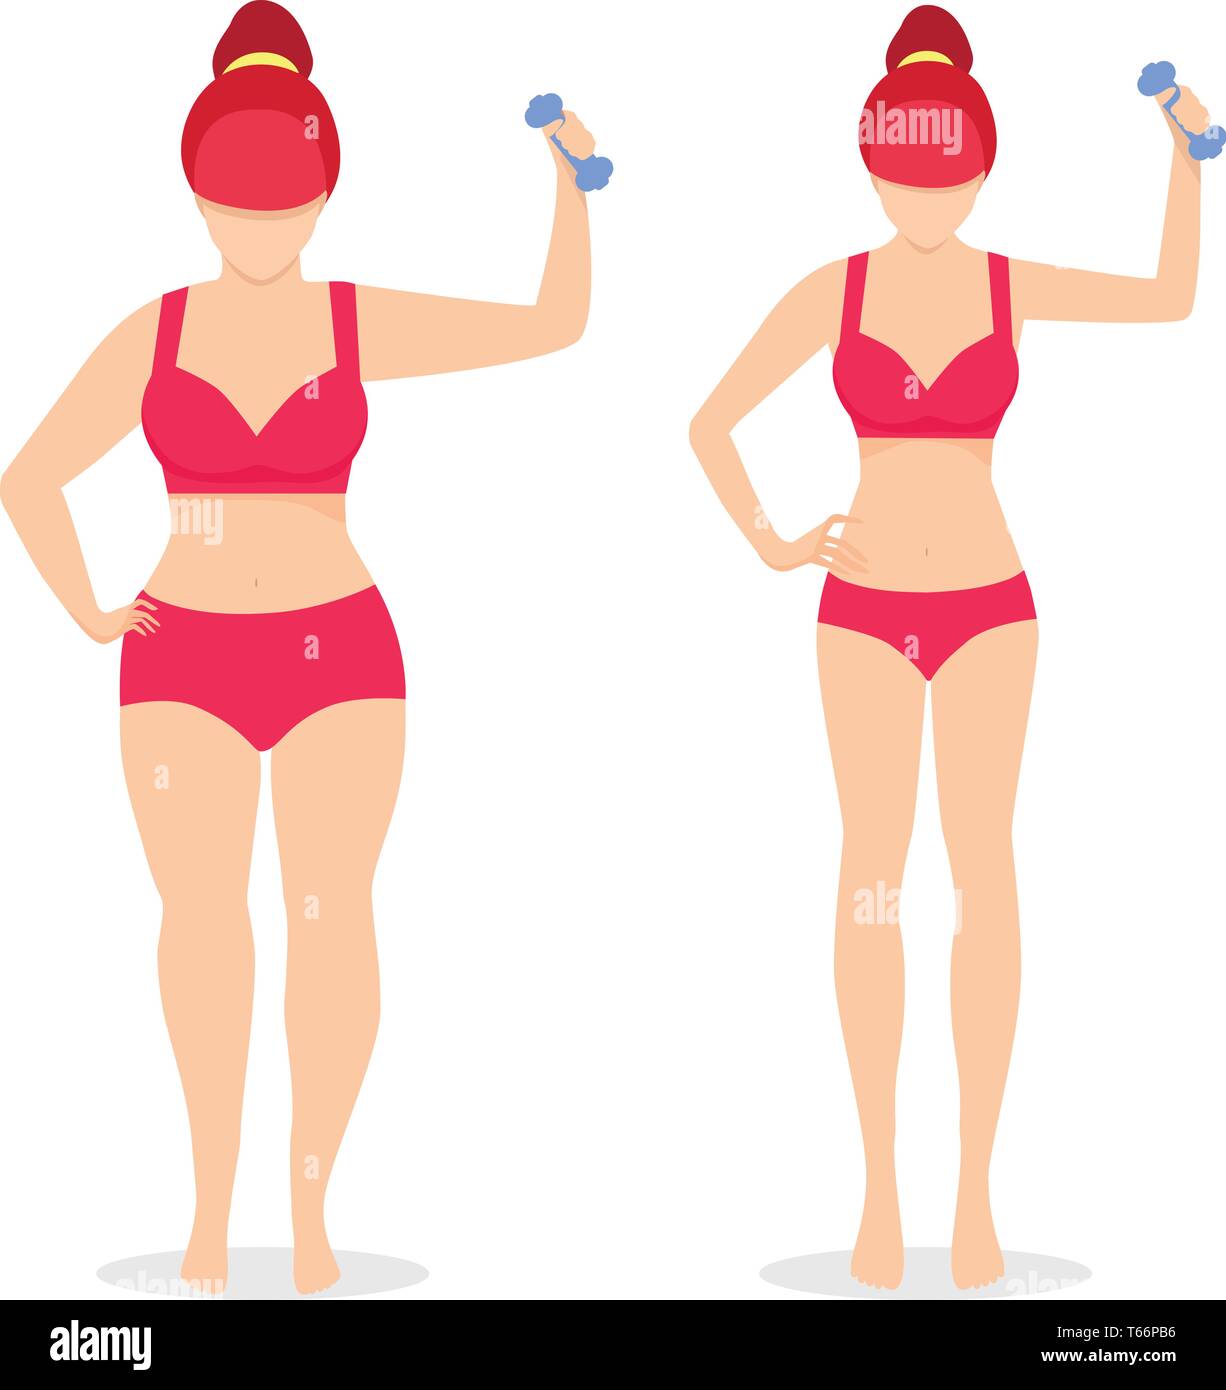 Fett und schlanke Frau Vor und Nach der Gewichtsreduktion in Unterwäsche isoliert auf weißem Hintergrund. Mädchen mit Hantel Diät und Fitness Concept. Fitnessraum, Gesundheit. Stock Vektor